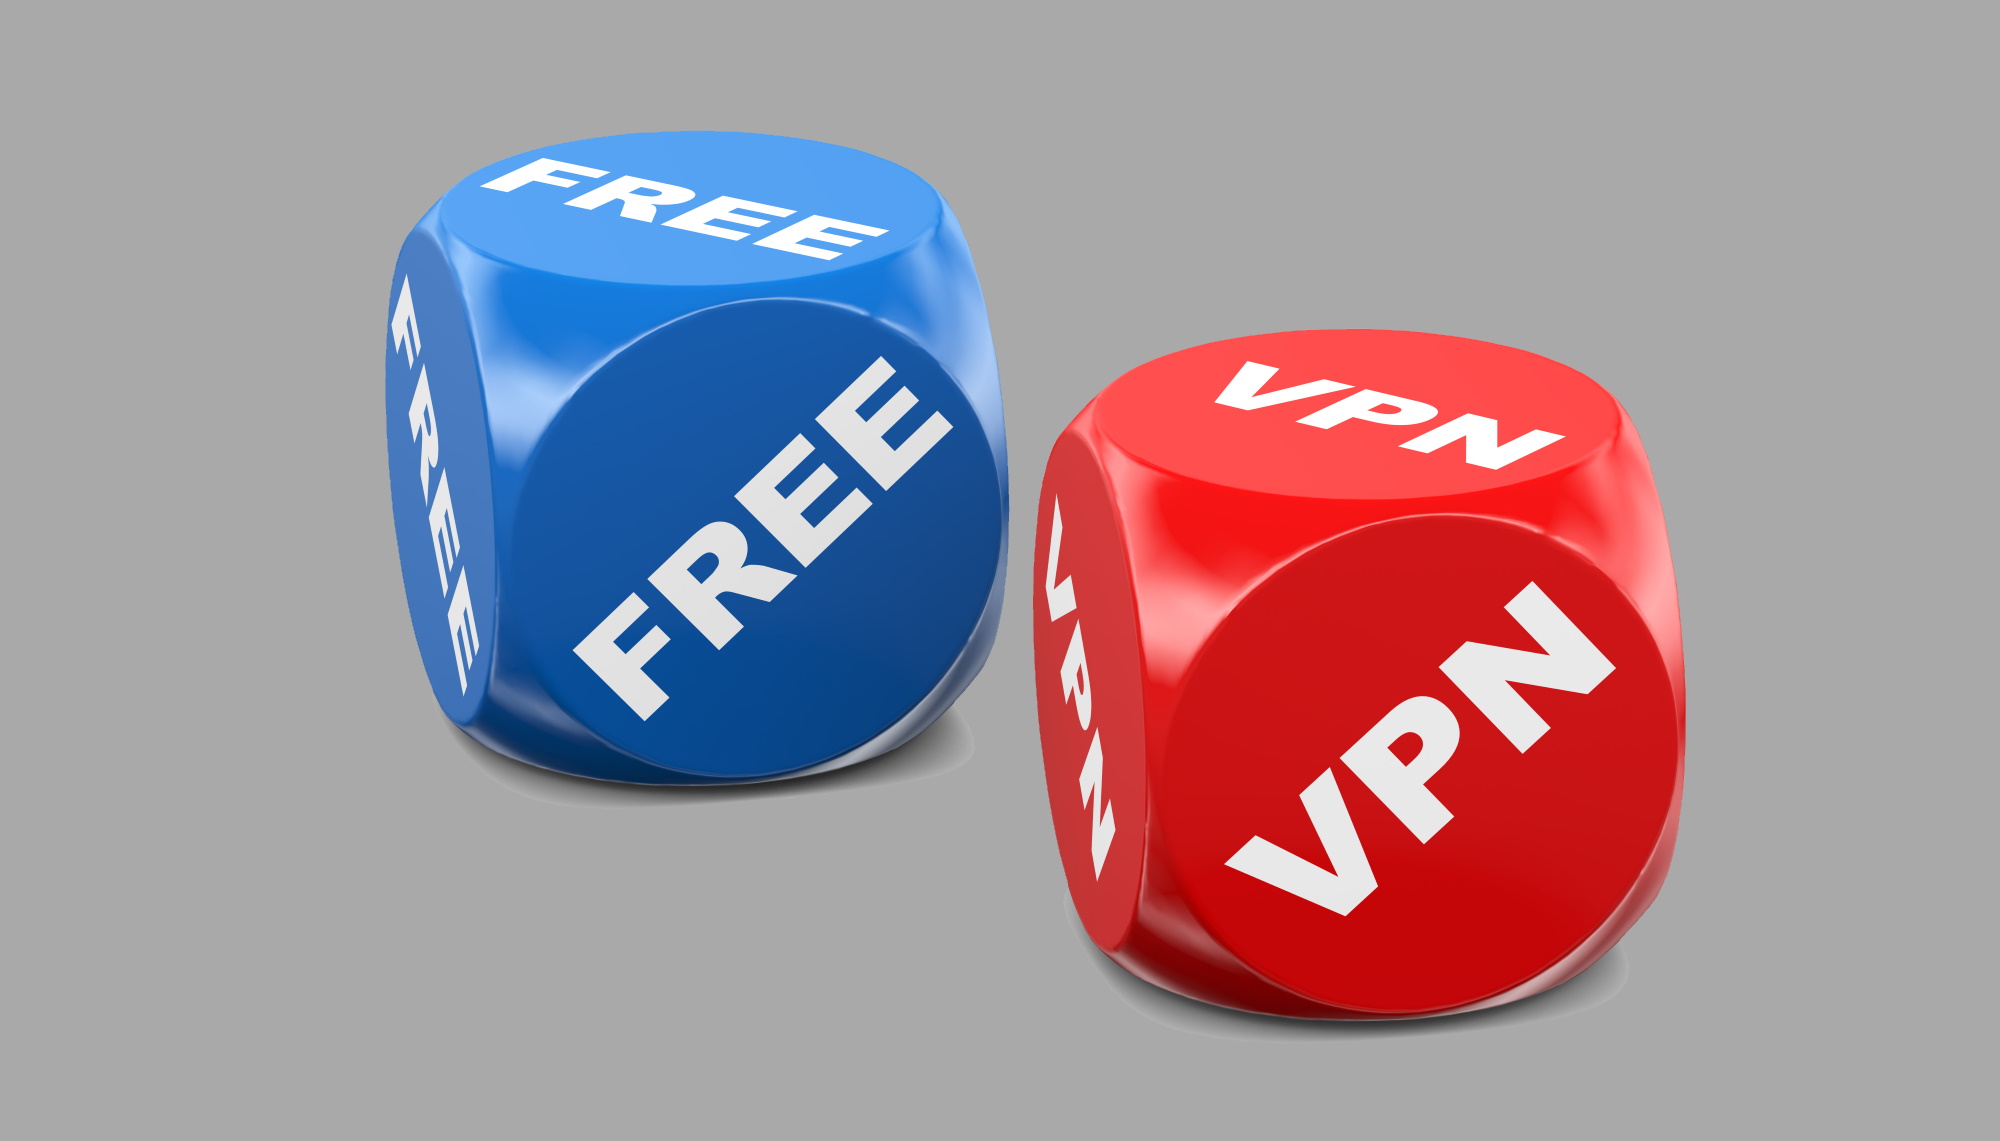 Paid vpn. Недостатки VPN. Недостатки бесплатных впн. VPN плюсы и минусы.